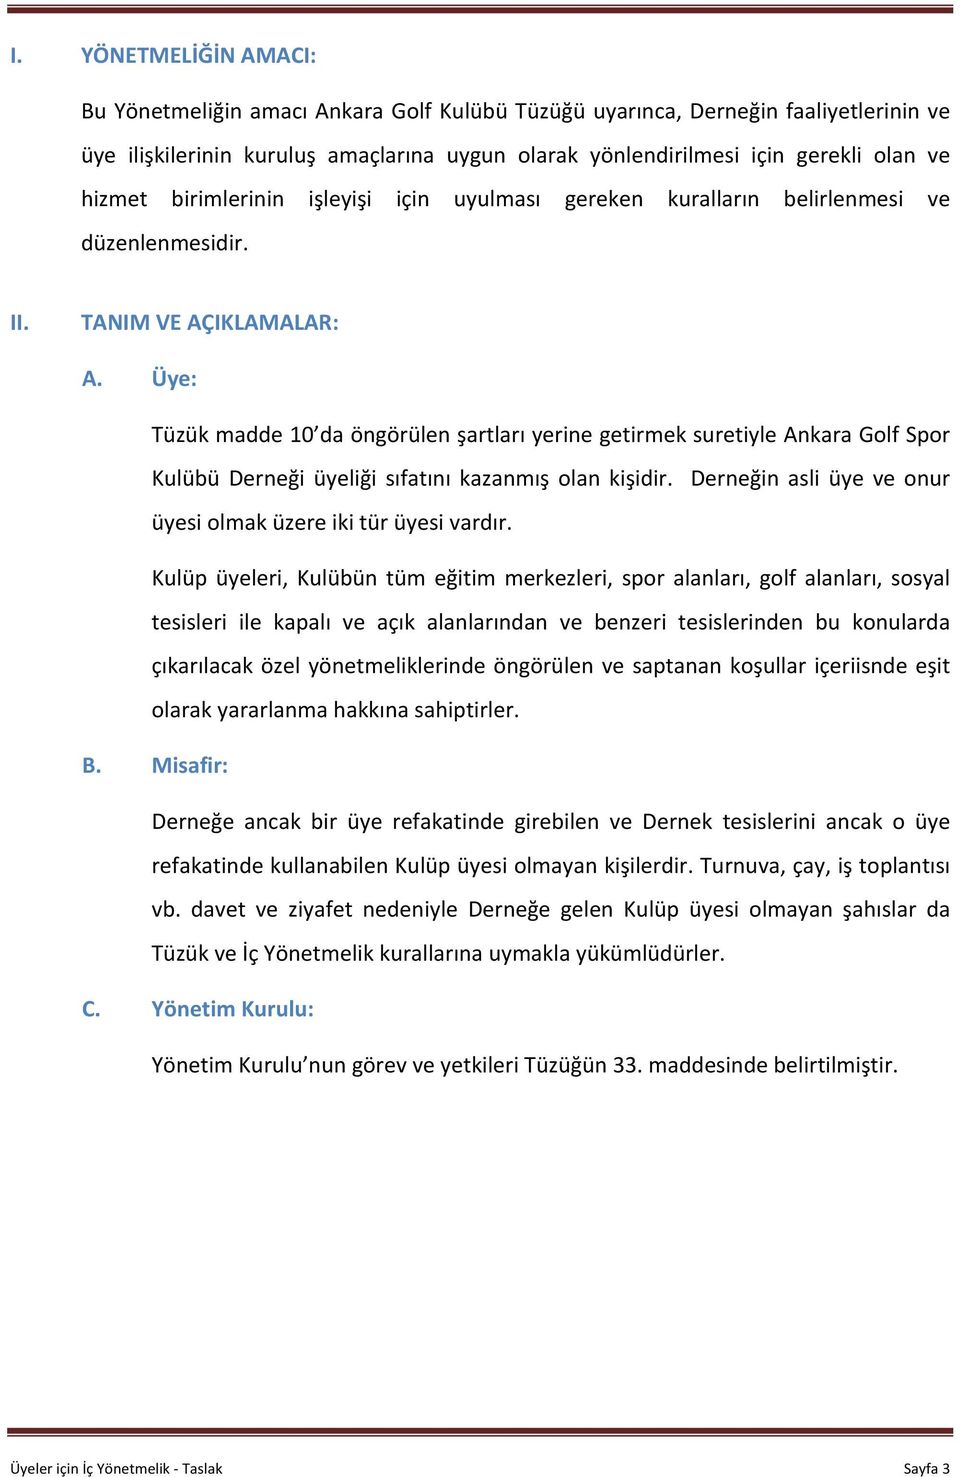 Üye: Tüzük madde 10 da öngörülen şartları yerine getirmek suretiyle Ankara Golf Spor Kulübü Derneği üyeliği sıfatını kazanmış olan kişidir.